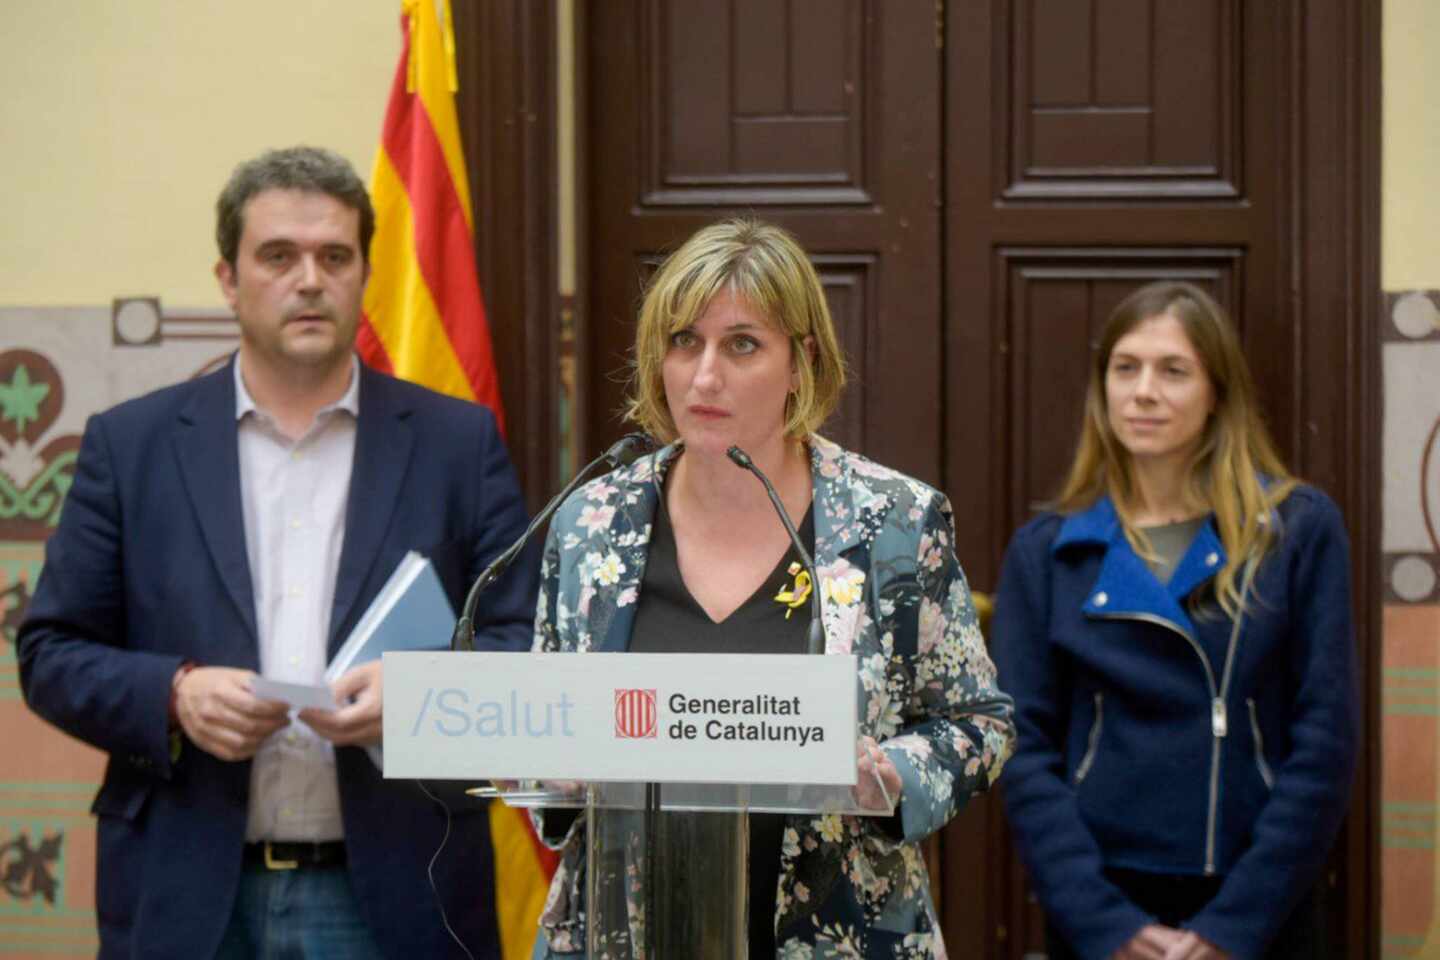 La Generalitat retira la denuncia por estafa y espera el material a final de semana